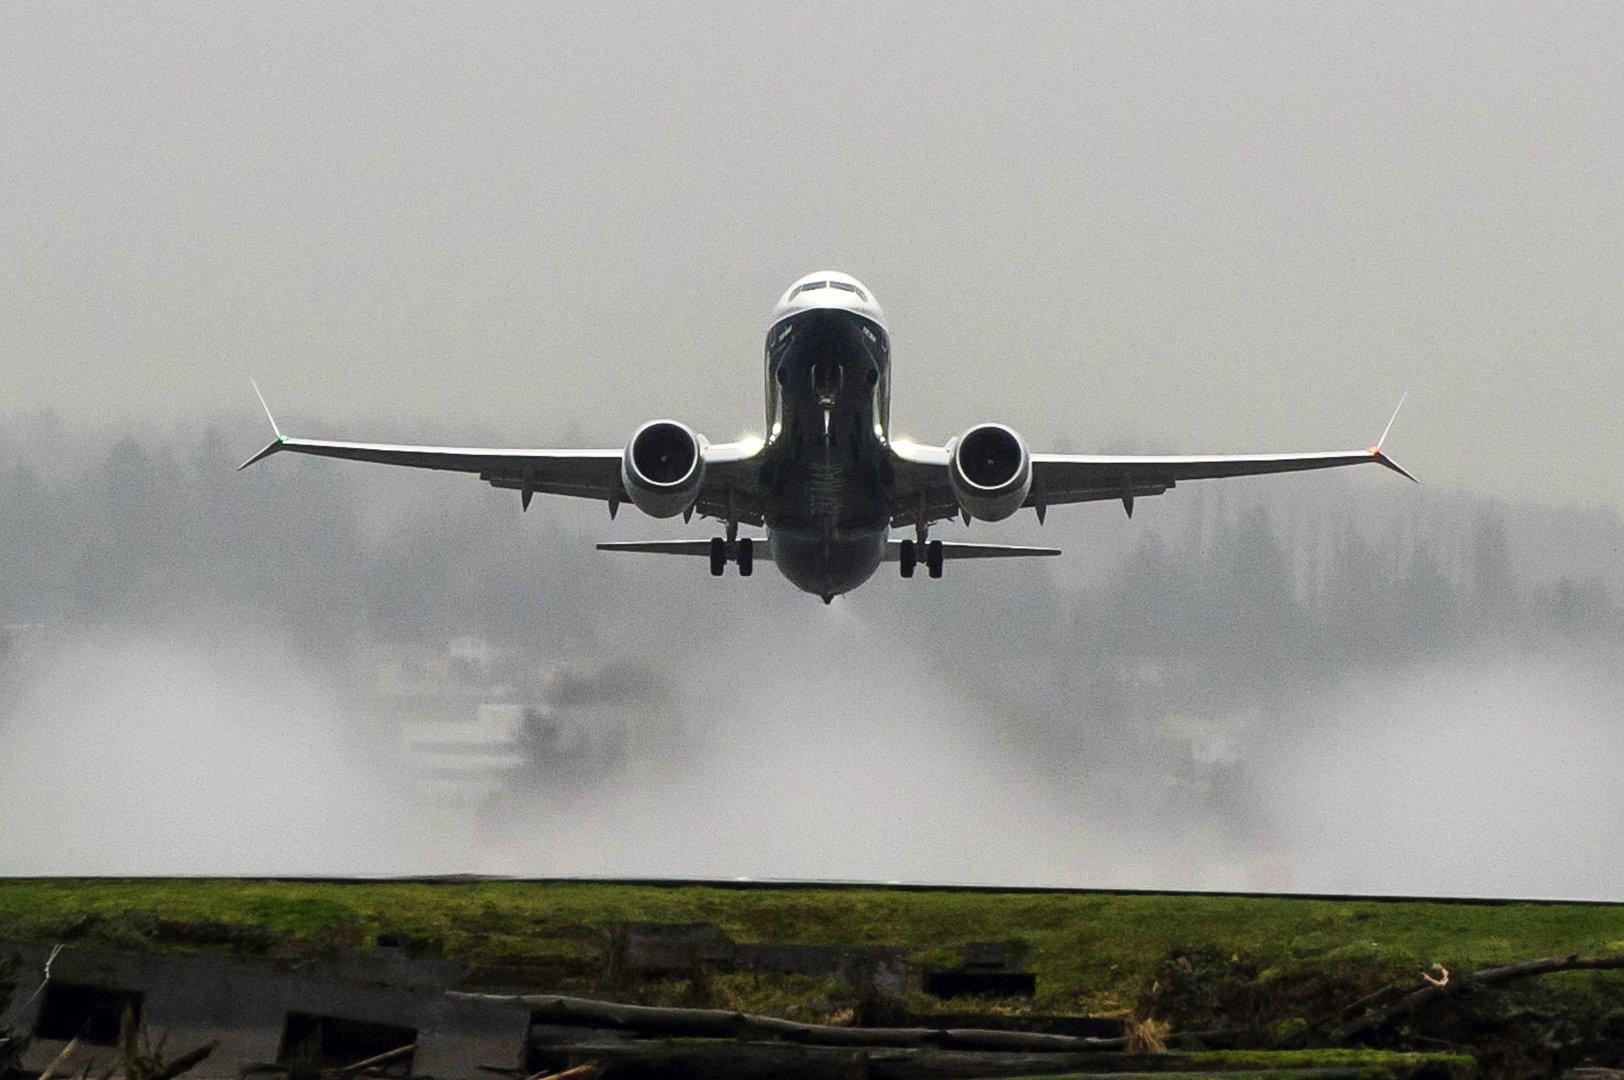 Boeing leistet nach Abstürzen 100 Millionen Dollar Finanzhilfe